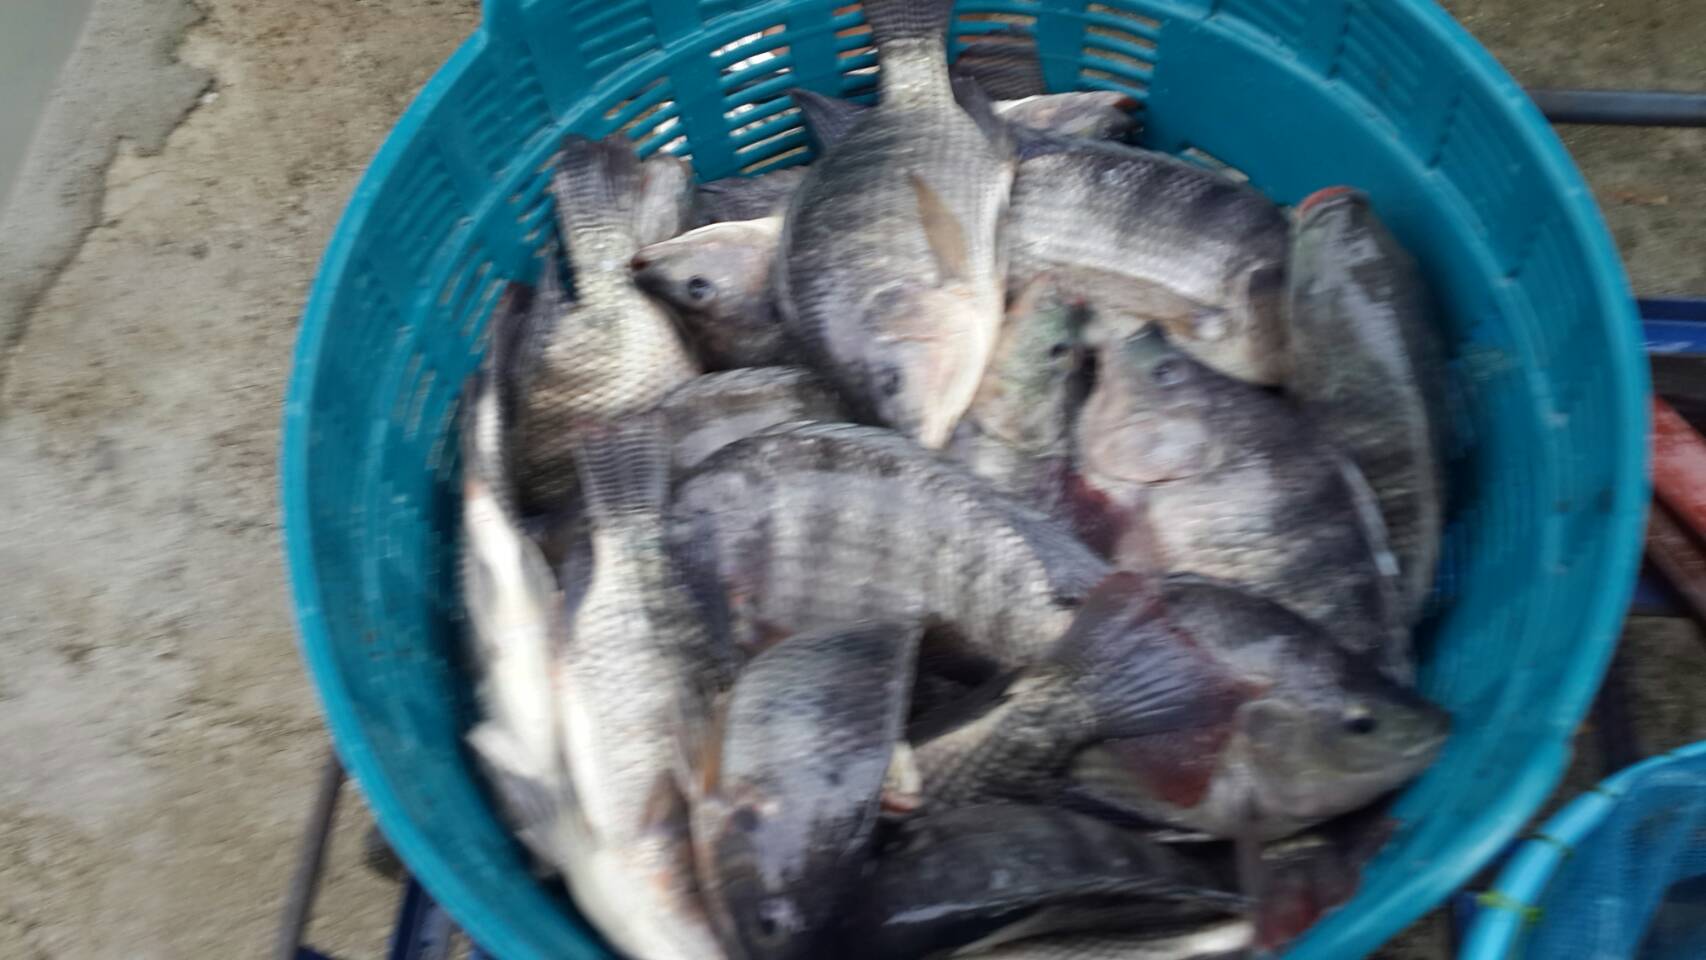 (((ลงปลาใหม่ทุกวันพุธ))) บ่อป้าเล็กซีพีเค เดือนสิงหานี้บ่อลงปลาทุกสัปดาห์ 300 โล